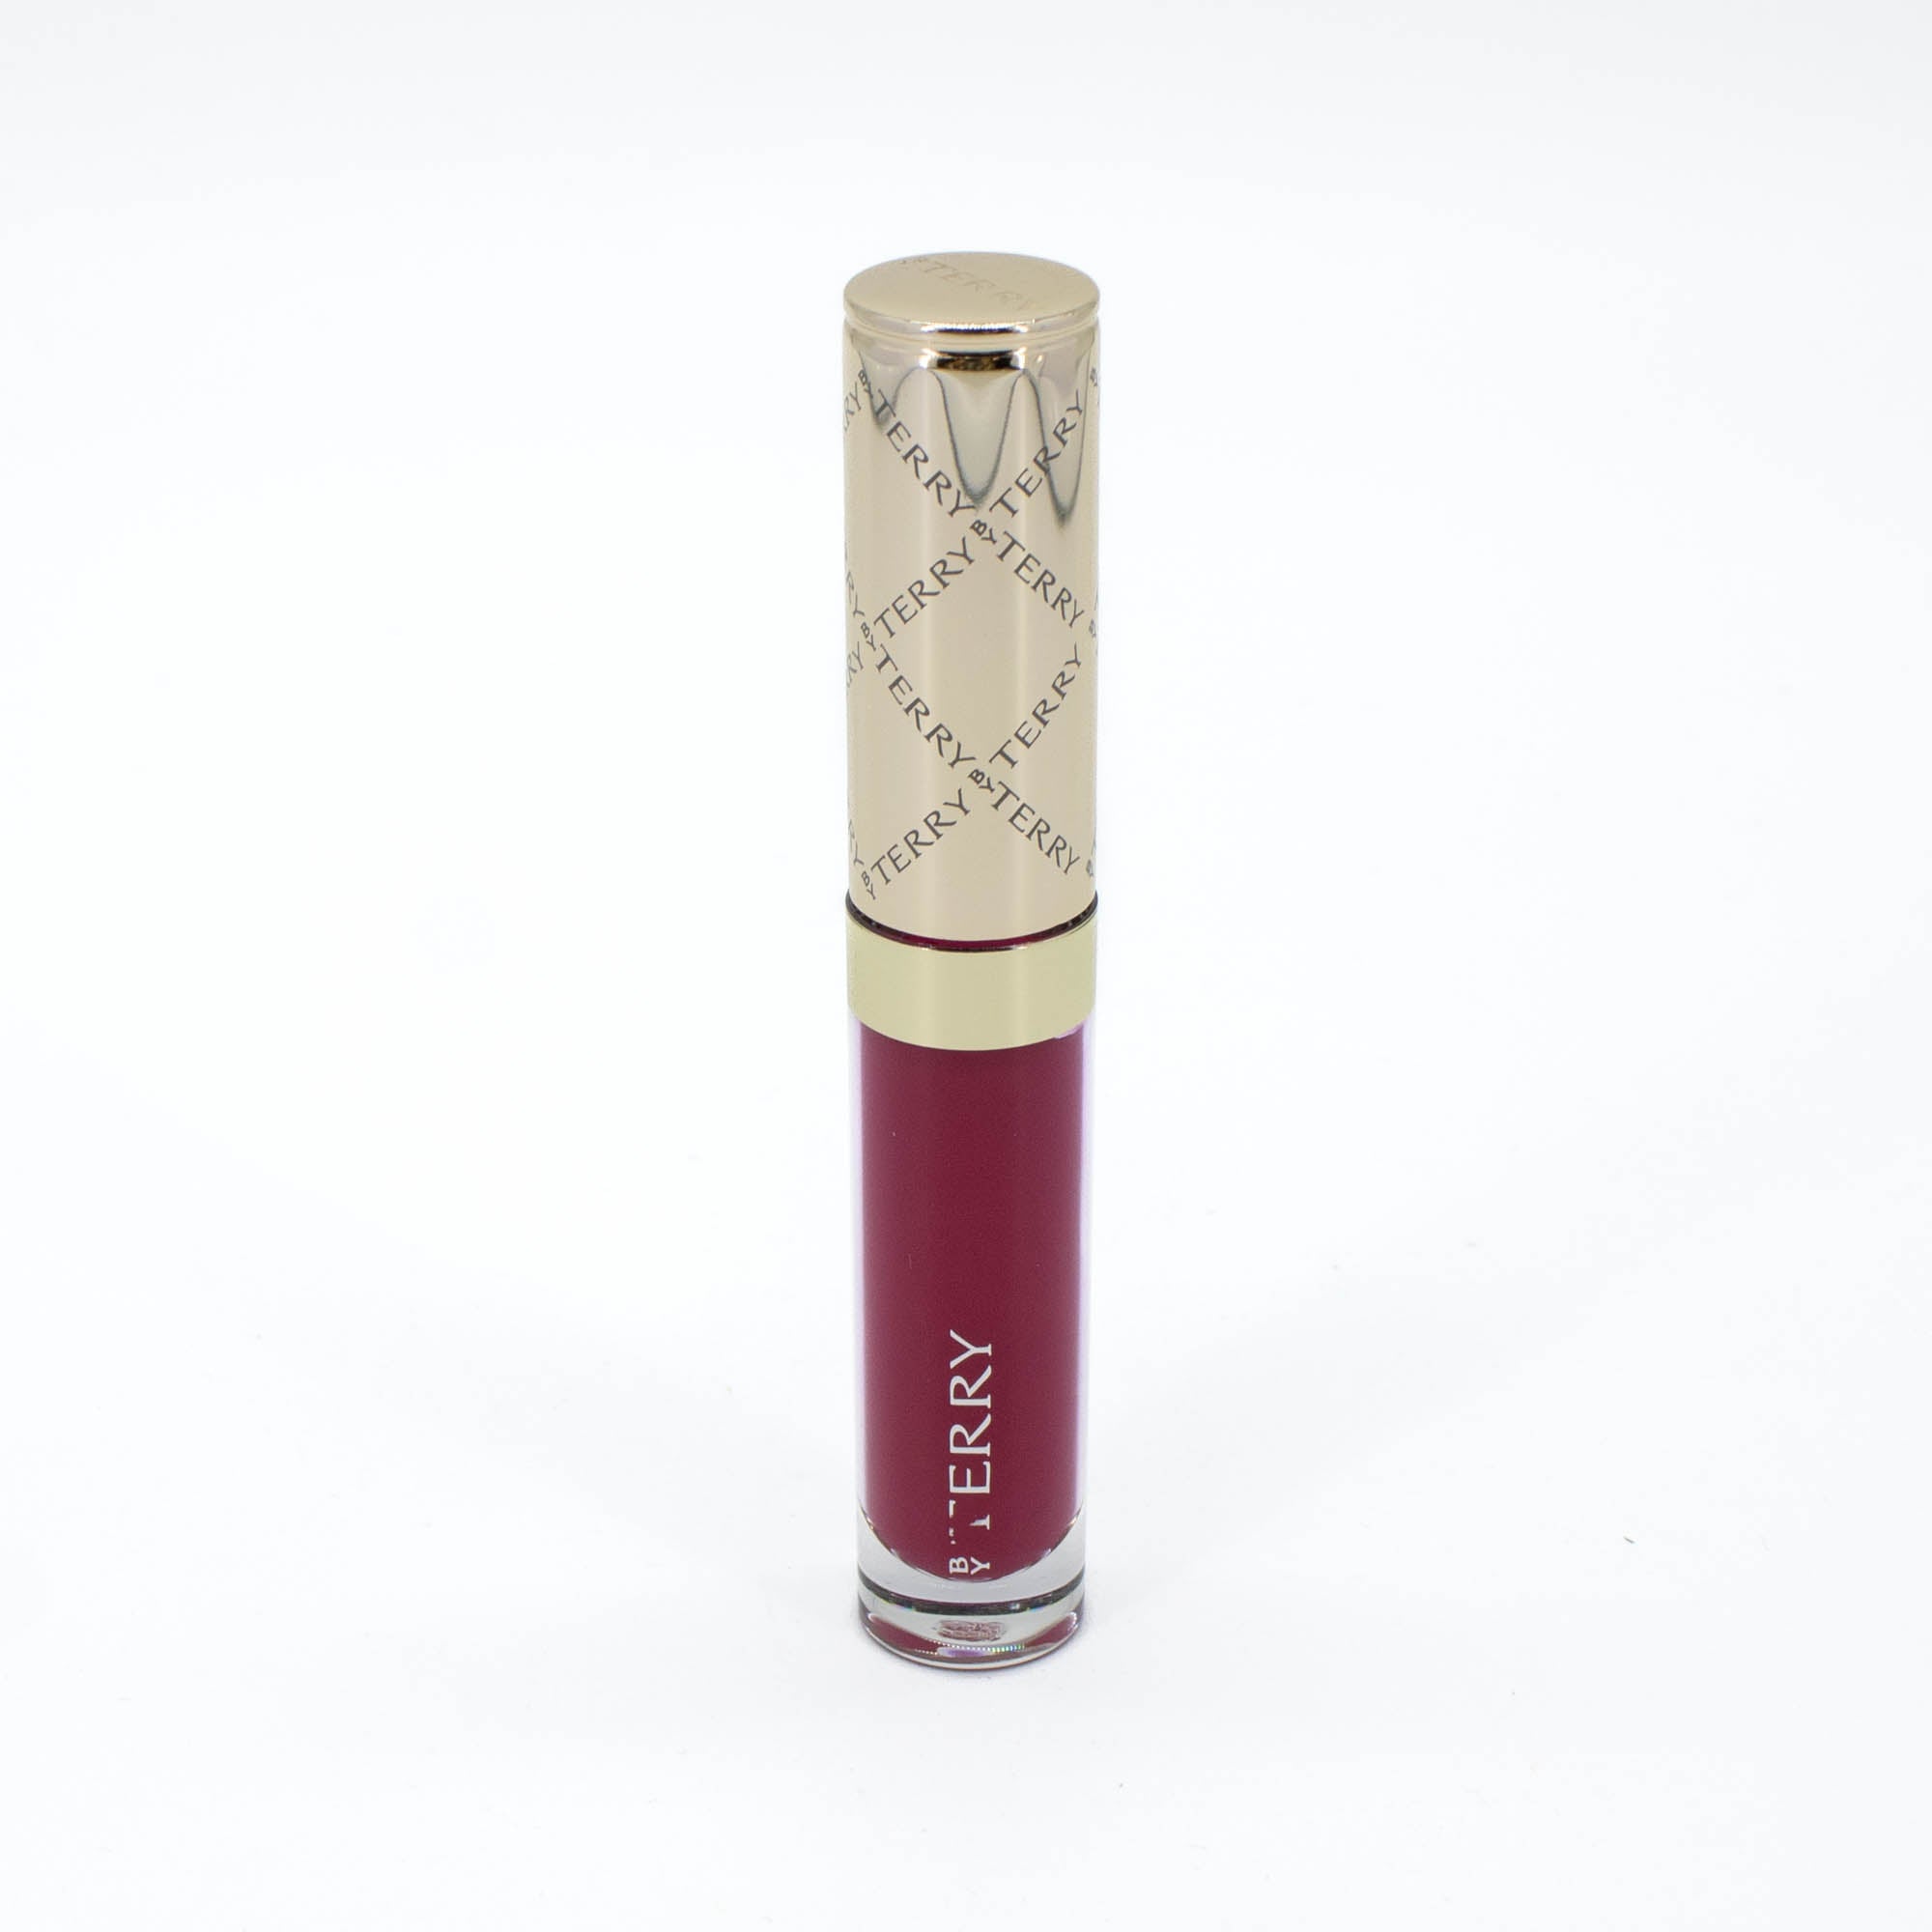 BYTERRY Terrybly Velvet Rouge Liquid Velvet Lipstick 5 - BABA BOOM 0.07oz - Imperfect Box